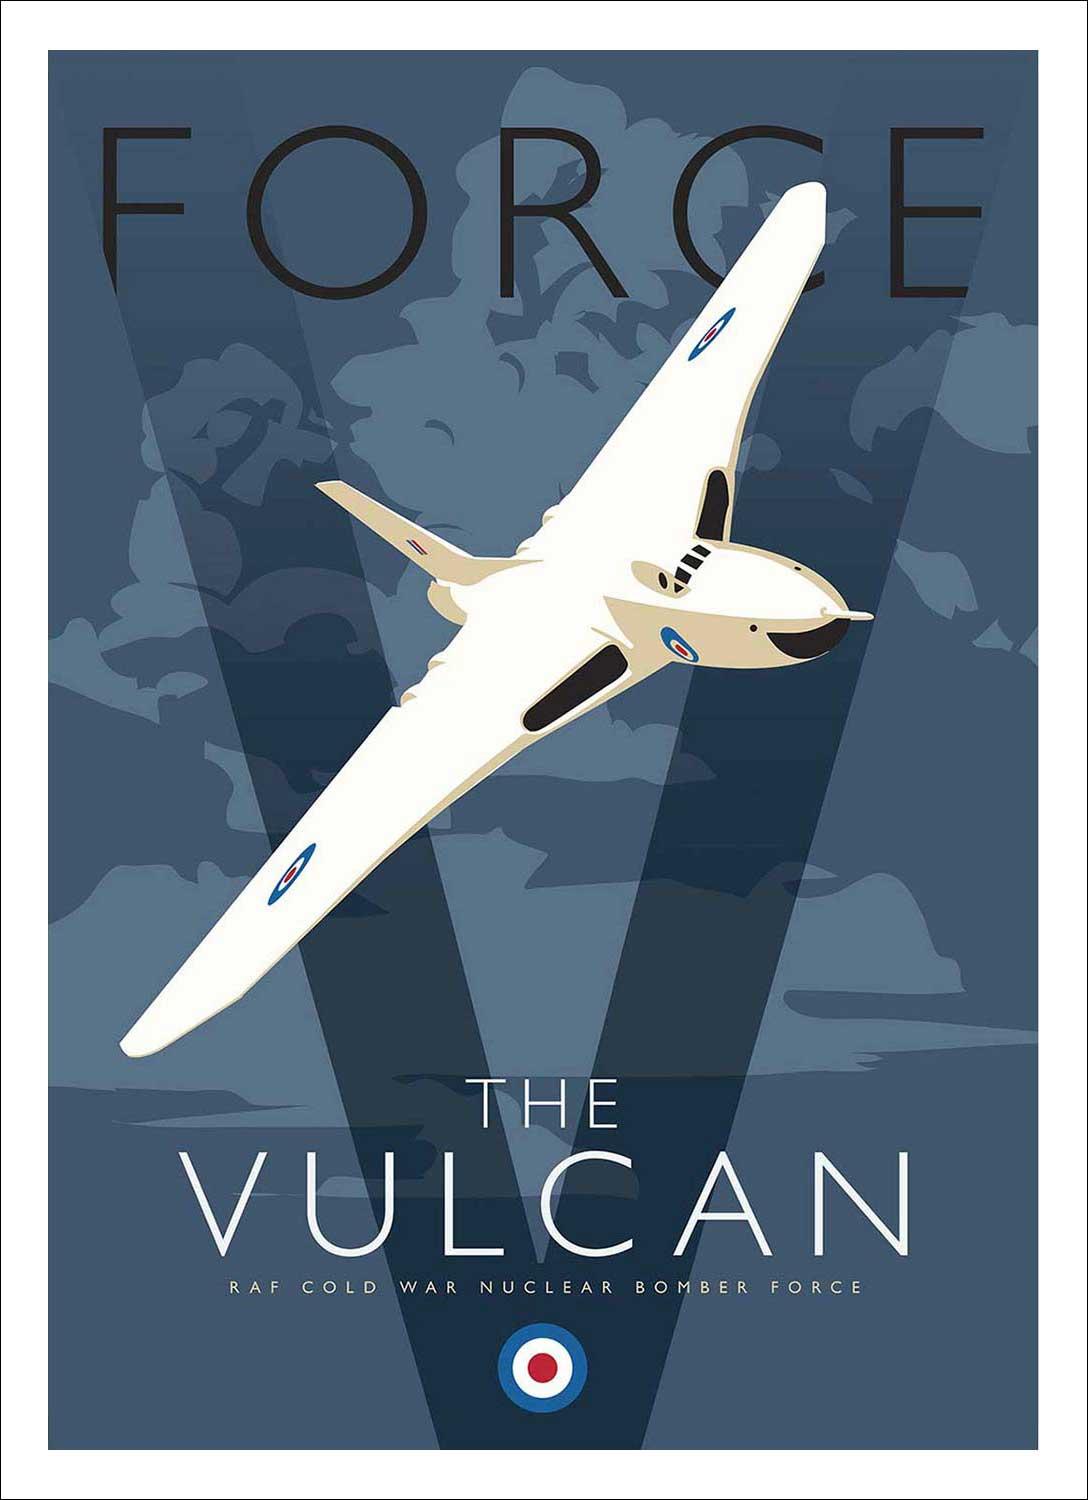 The Vulcan Art Print from an original illustration by artist Peter McDermott